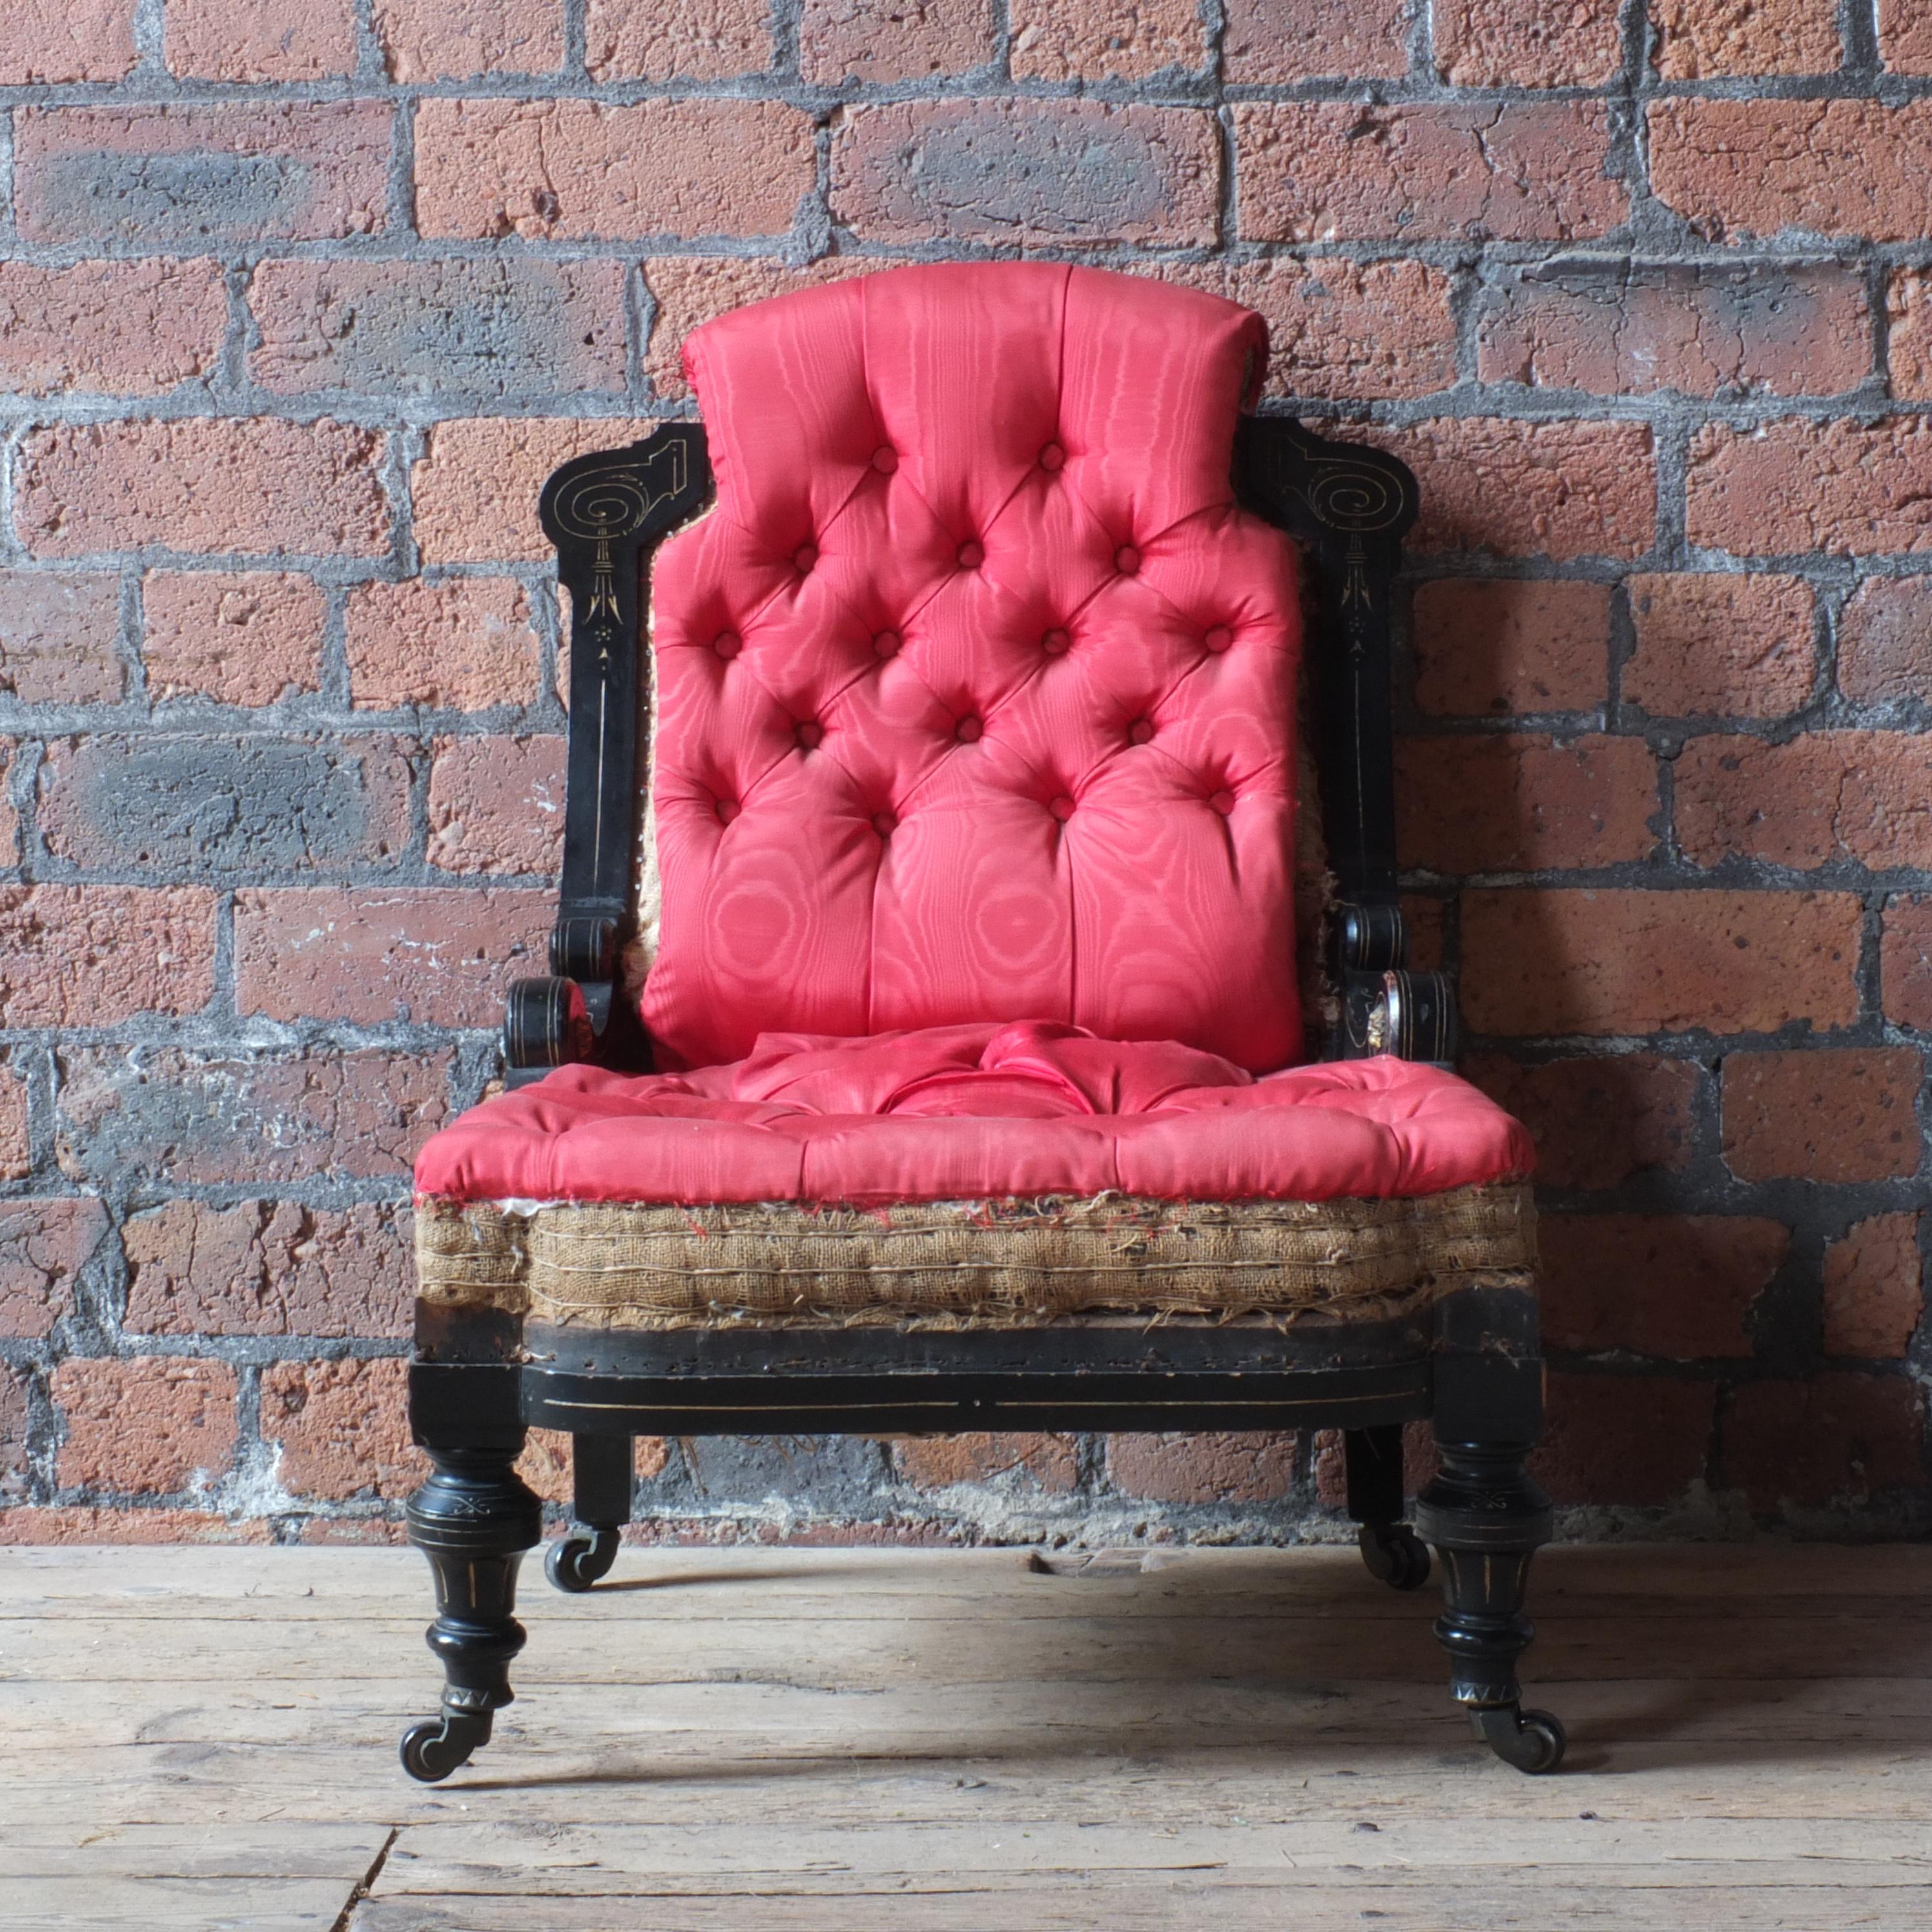 Une chaise pantoufle du mouvement esthétique du 19ème siècle par Ogden's de Manchester. Le cadre ébénisé et doré est en bon état avec une certaine usure liée à l'âge et à l'utilisation. Il a conservé ses intérieurs d'origine et a juste besoin d'être